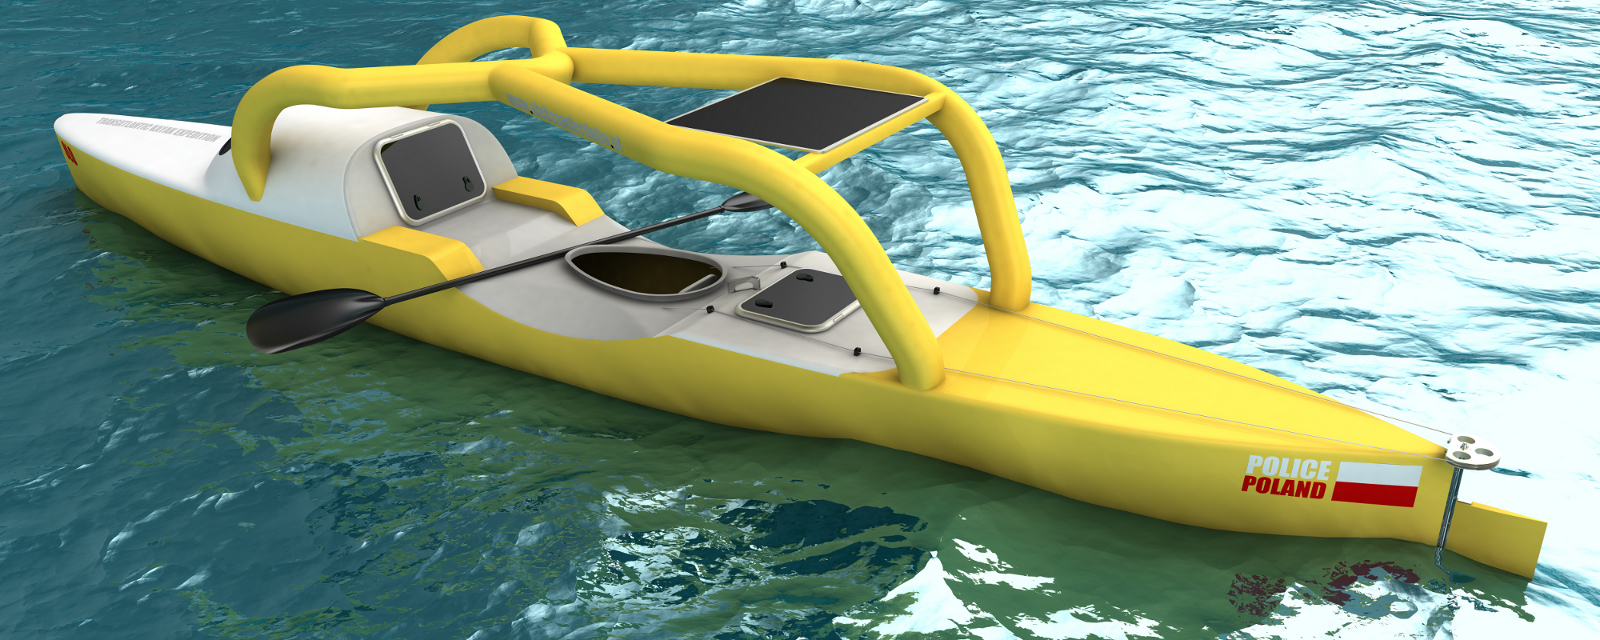 Transatlantic Kayak Crossing: Kayak